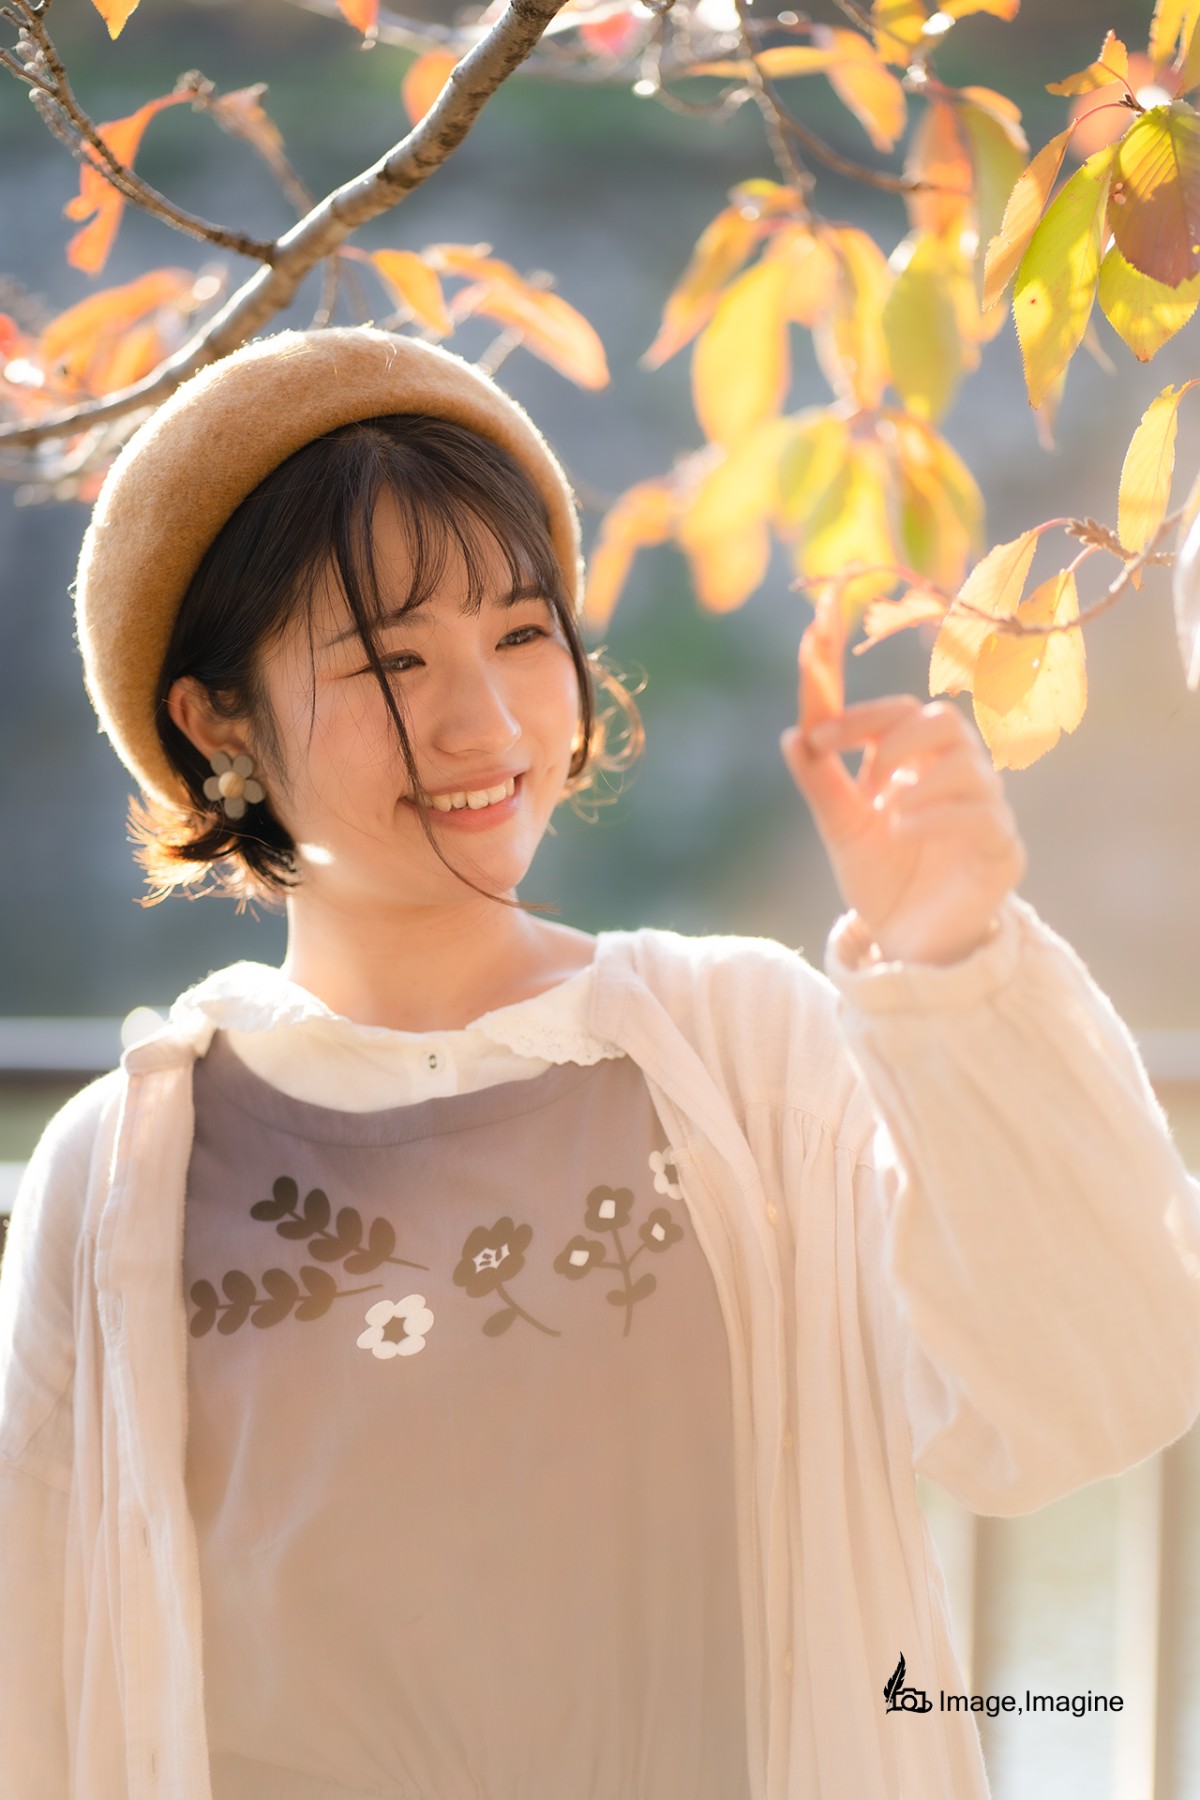 秋の大阪城で女性を撮影した写真。女性はオレンジ色に染まった木の葉を左手でつまみながら微笑んでいる。